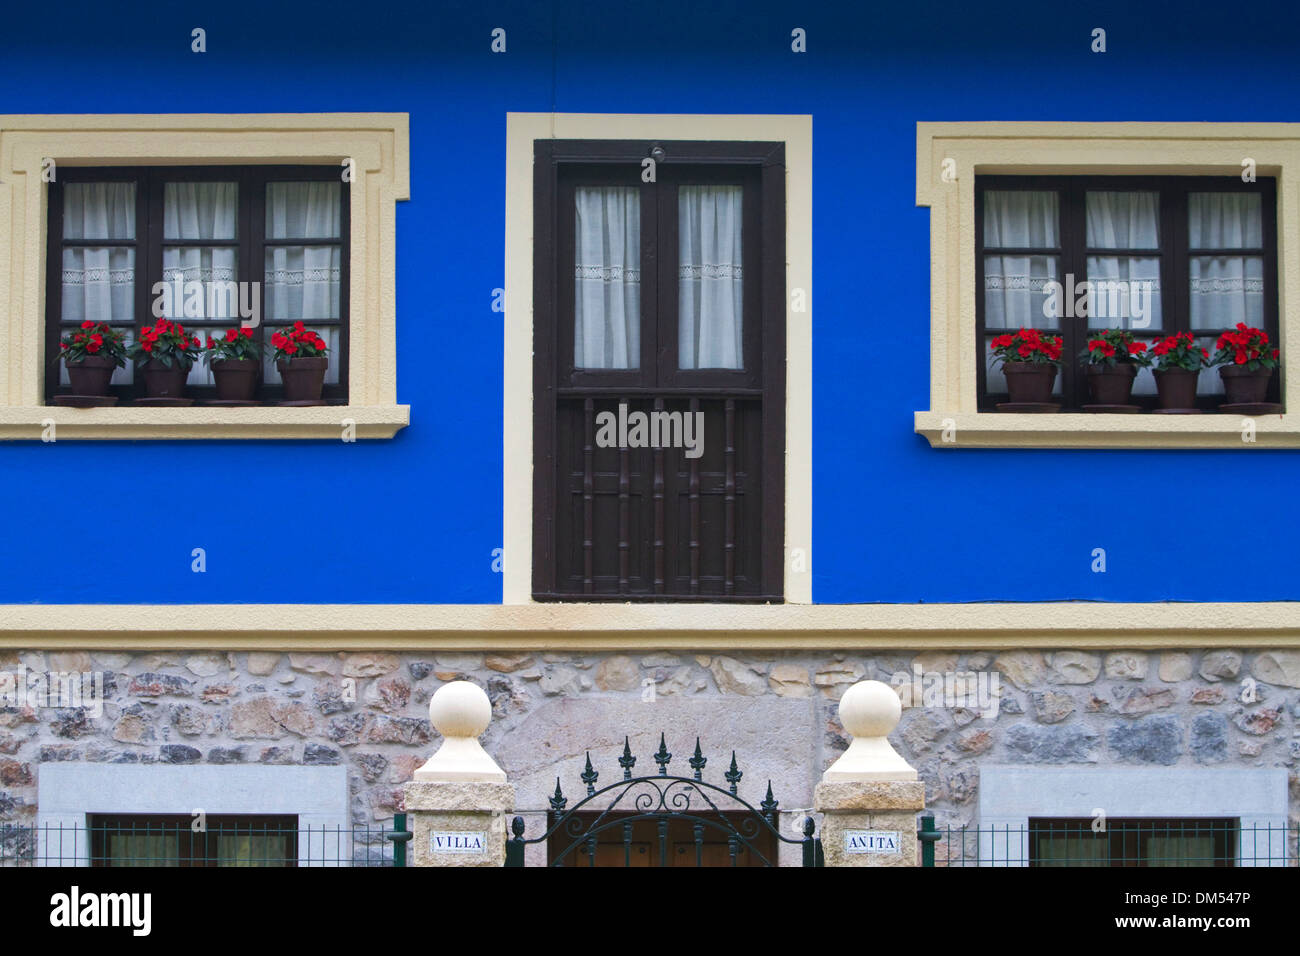 Wohnungsbau mit Blumen in Windows in der Gemeinde von Cangas de Onis in Asturien, Spanien. Stockfoto